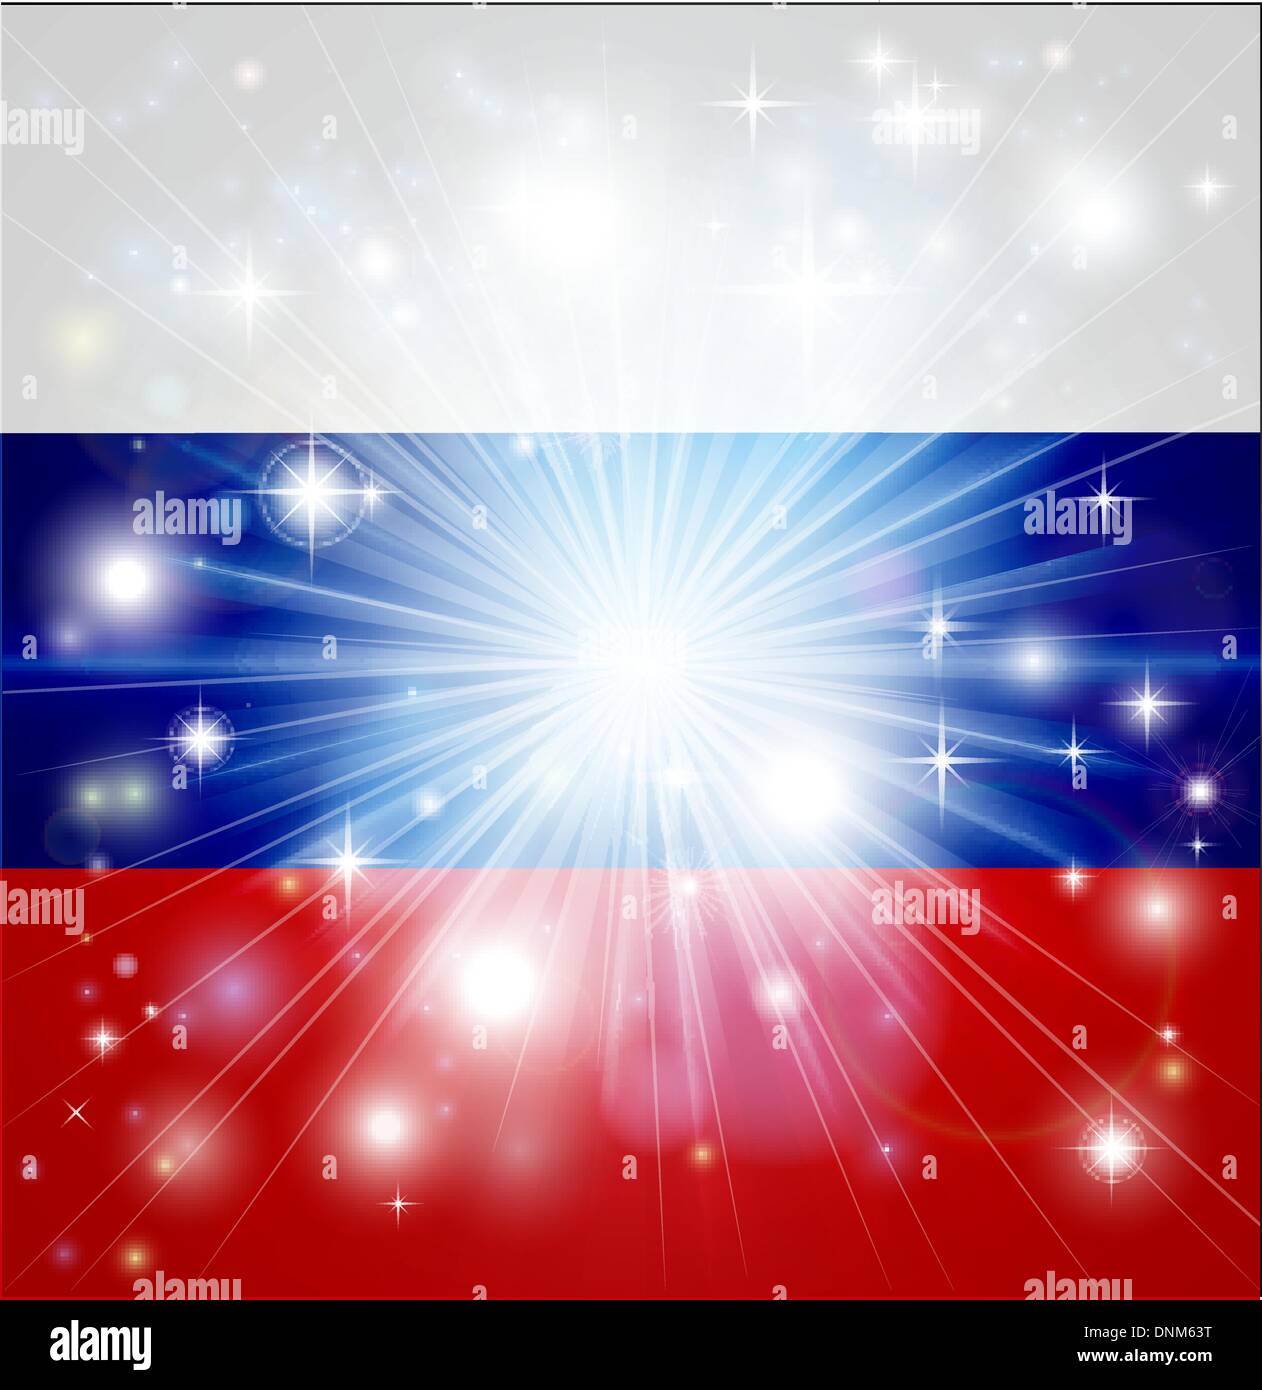 Drapeau de la Fédération de Russie avec l'arrière-plan ou pyrotechniques light burst et copiez l'espace dans le centre Illustration de Vecteur